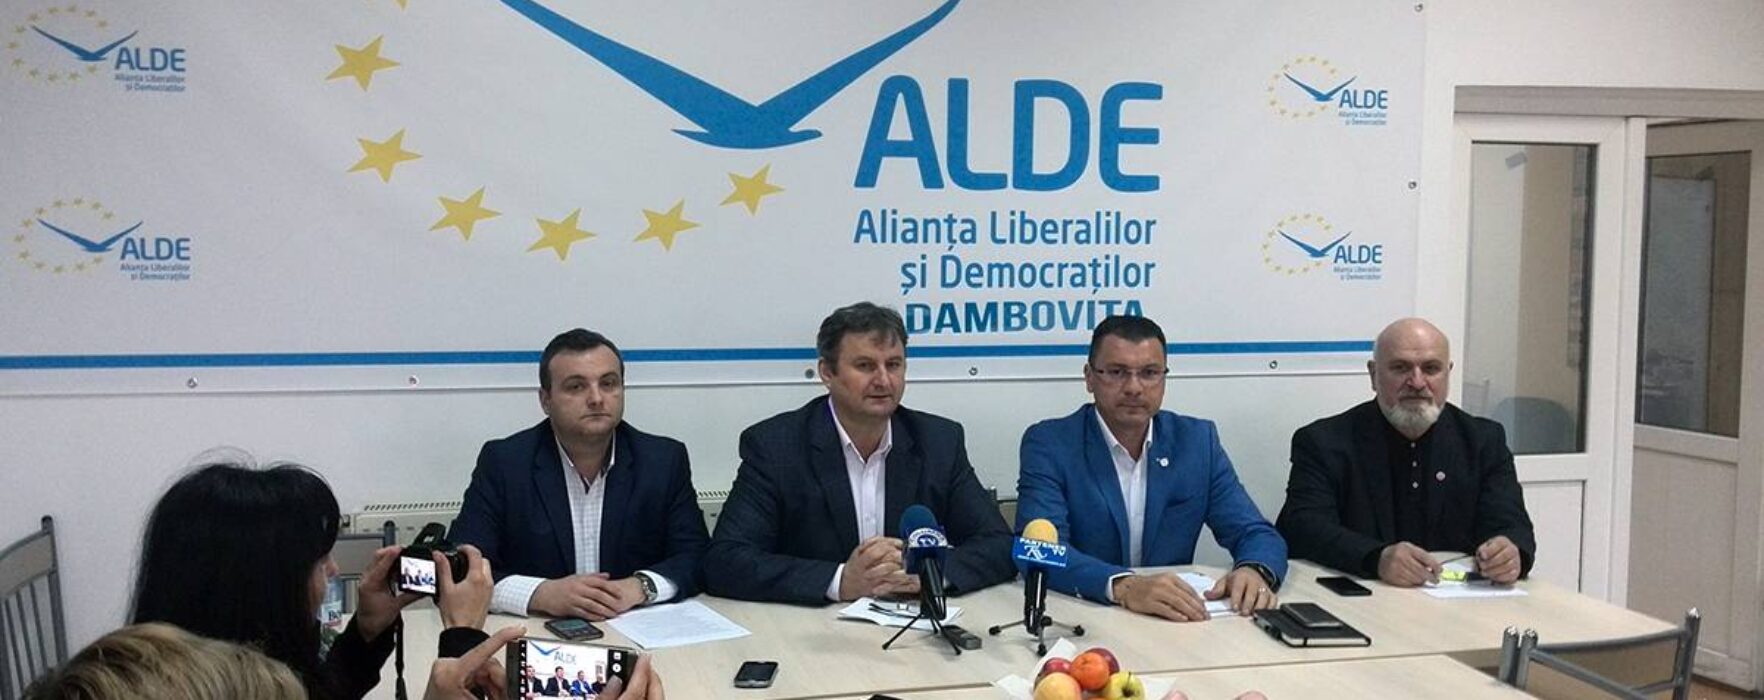 Electoral: Candidații ALDE la alegerile parlamentare, oameni cu o vastă experiență profesională